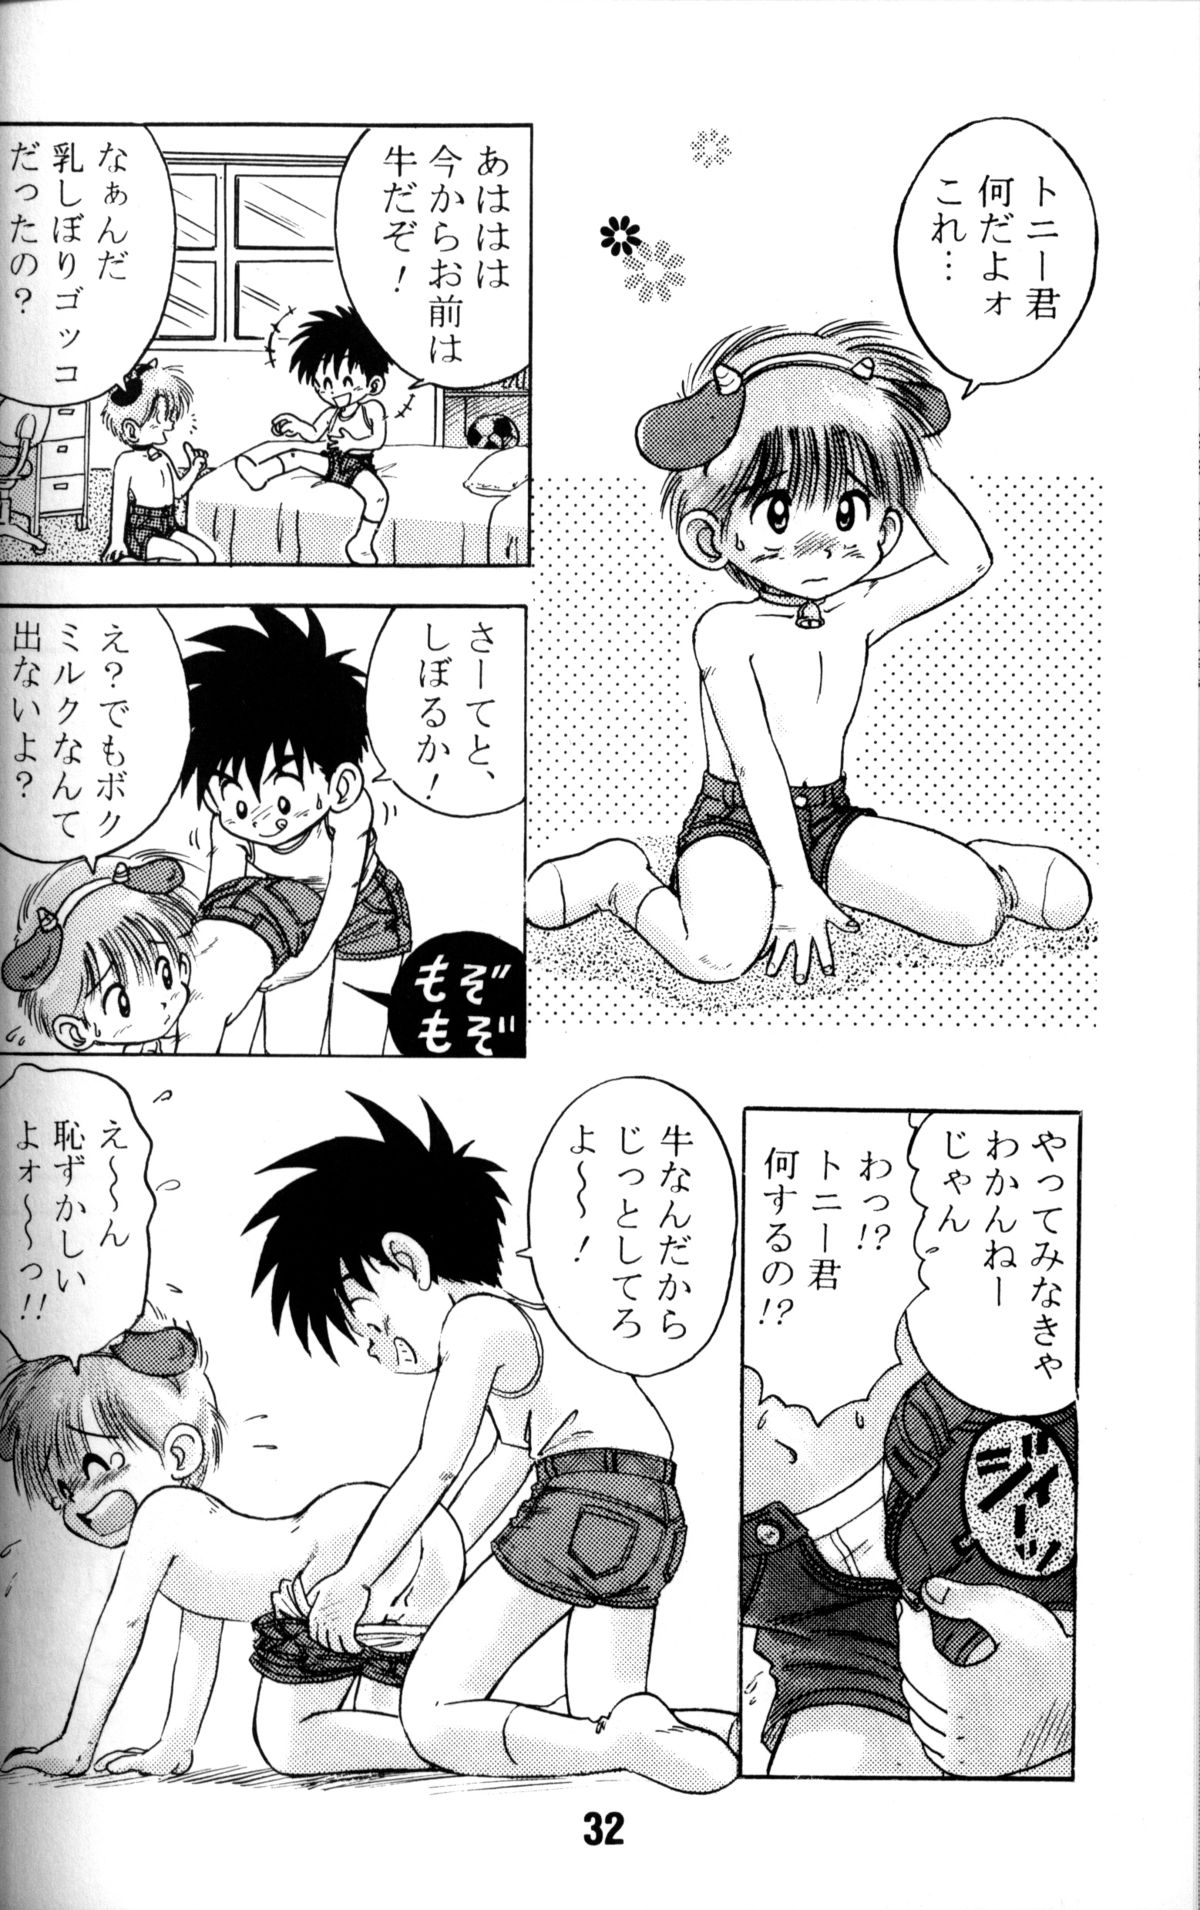 Anthology - Nekketsu Project - Volume 1 'Shounen Banana Milk' page 31 full